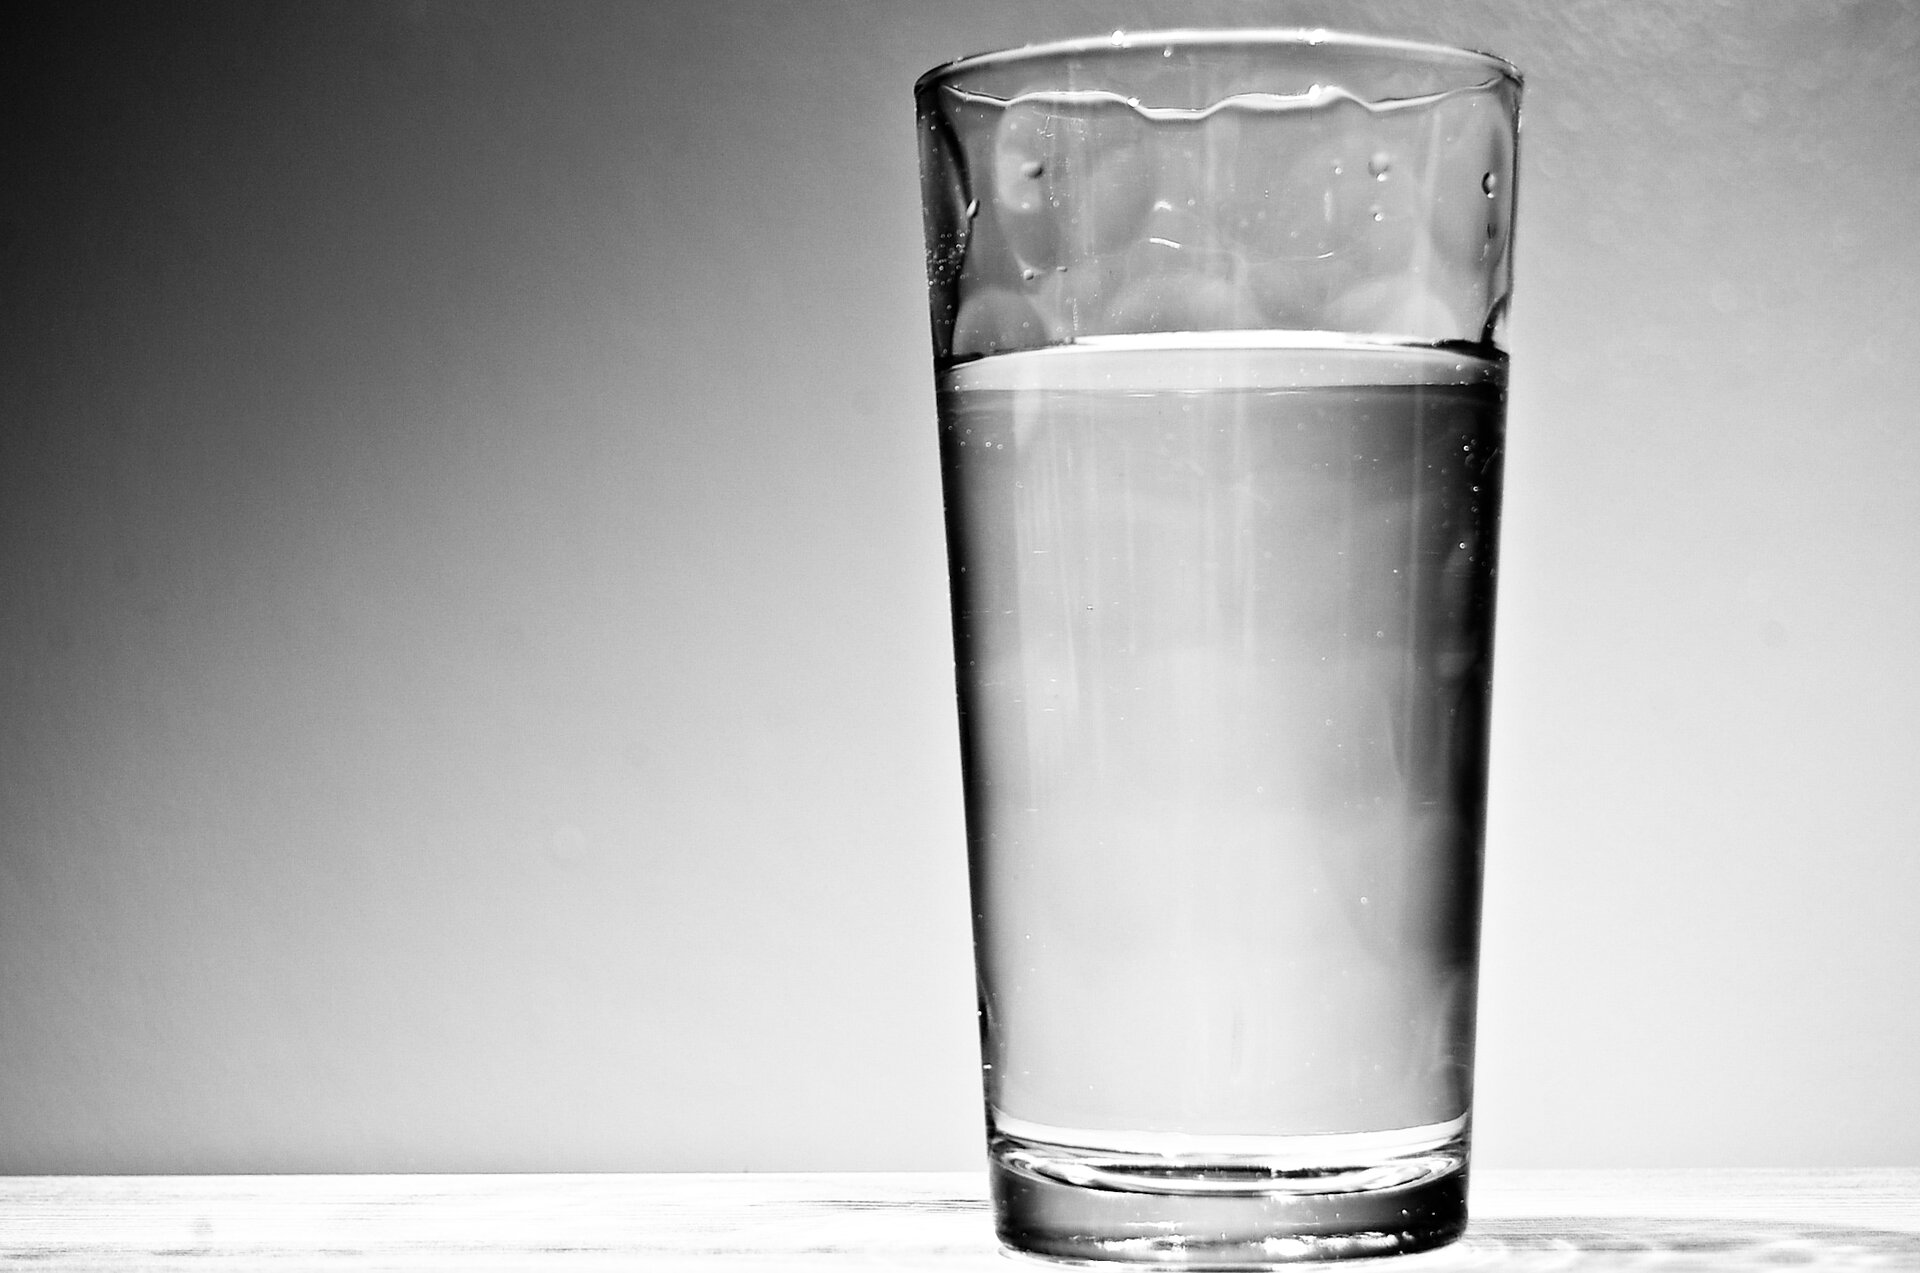 Grafika przedstawia zdjęcie, na którym znajduje się przezroczysta szklanka wypełniona wodą. Szklanka przedstawiona jest na szarym tle.